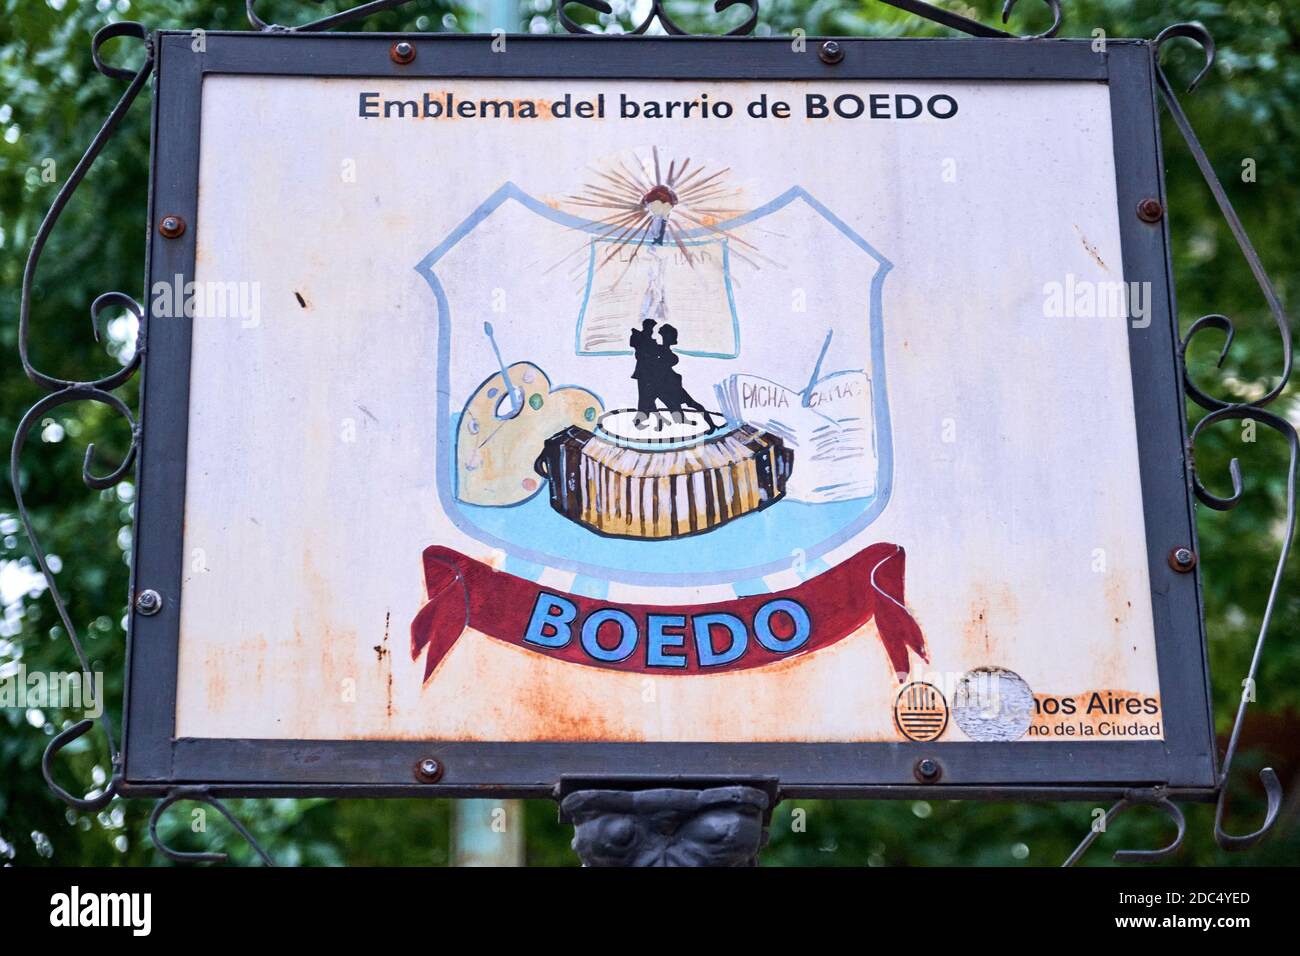 Buenos Aires / Argentina; 14-nov-2020: Cartel con el emblema del barrio de Boedo Foto de stock